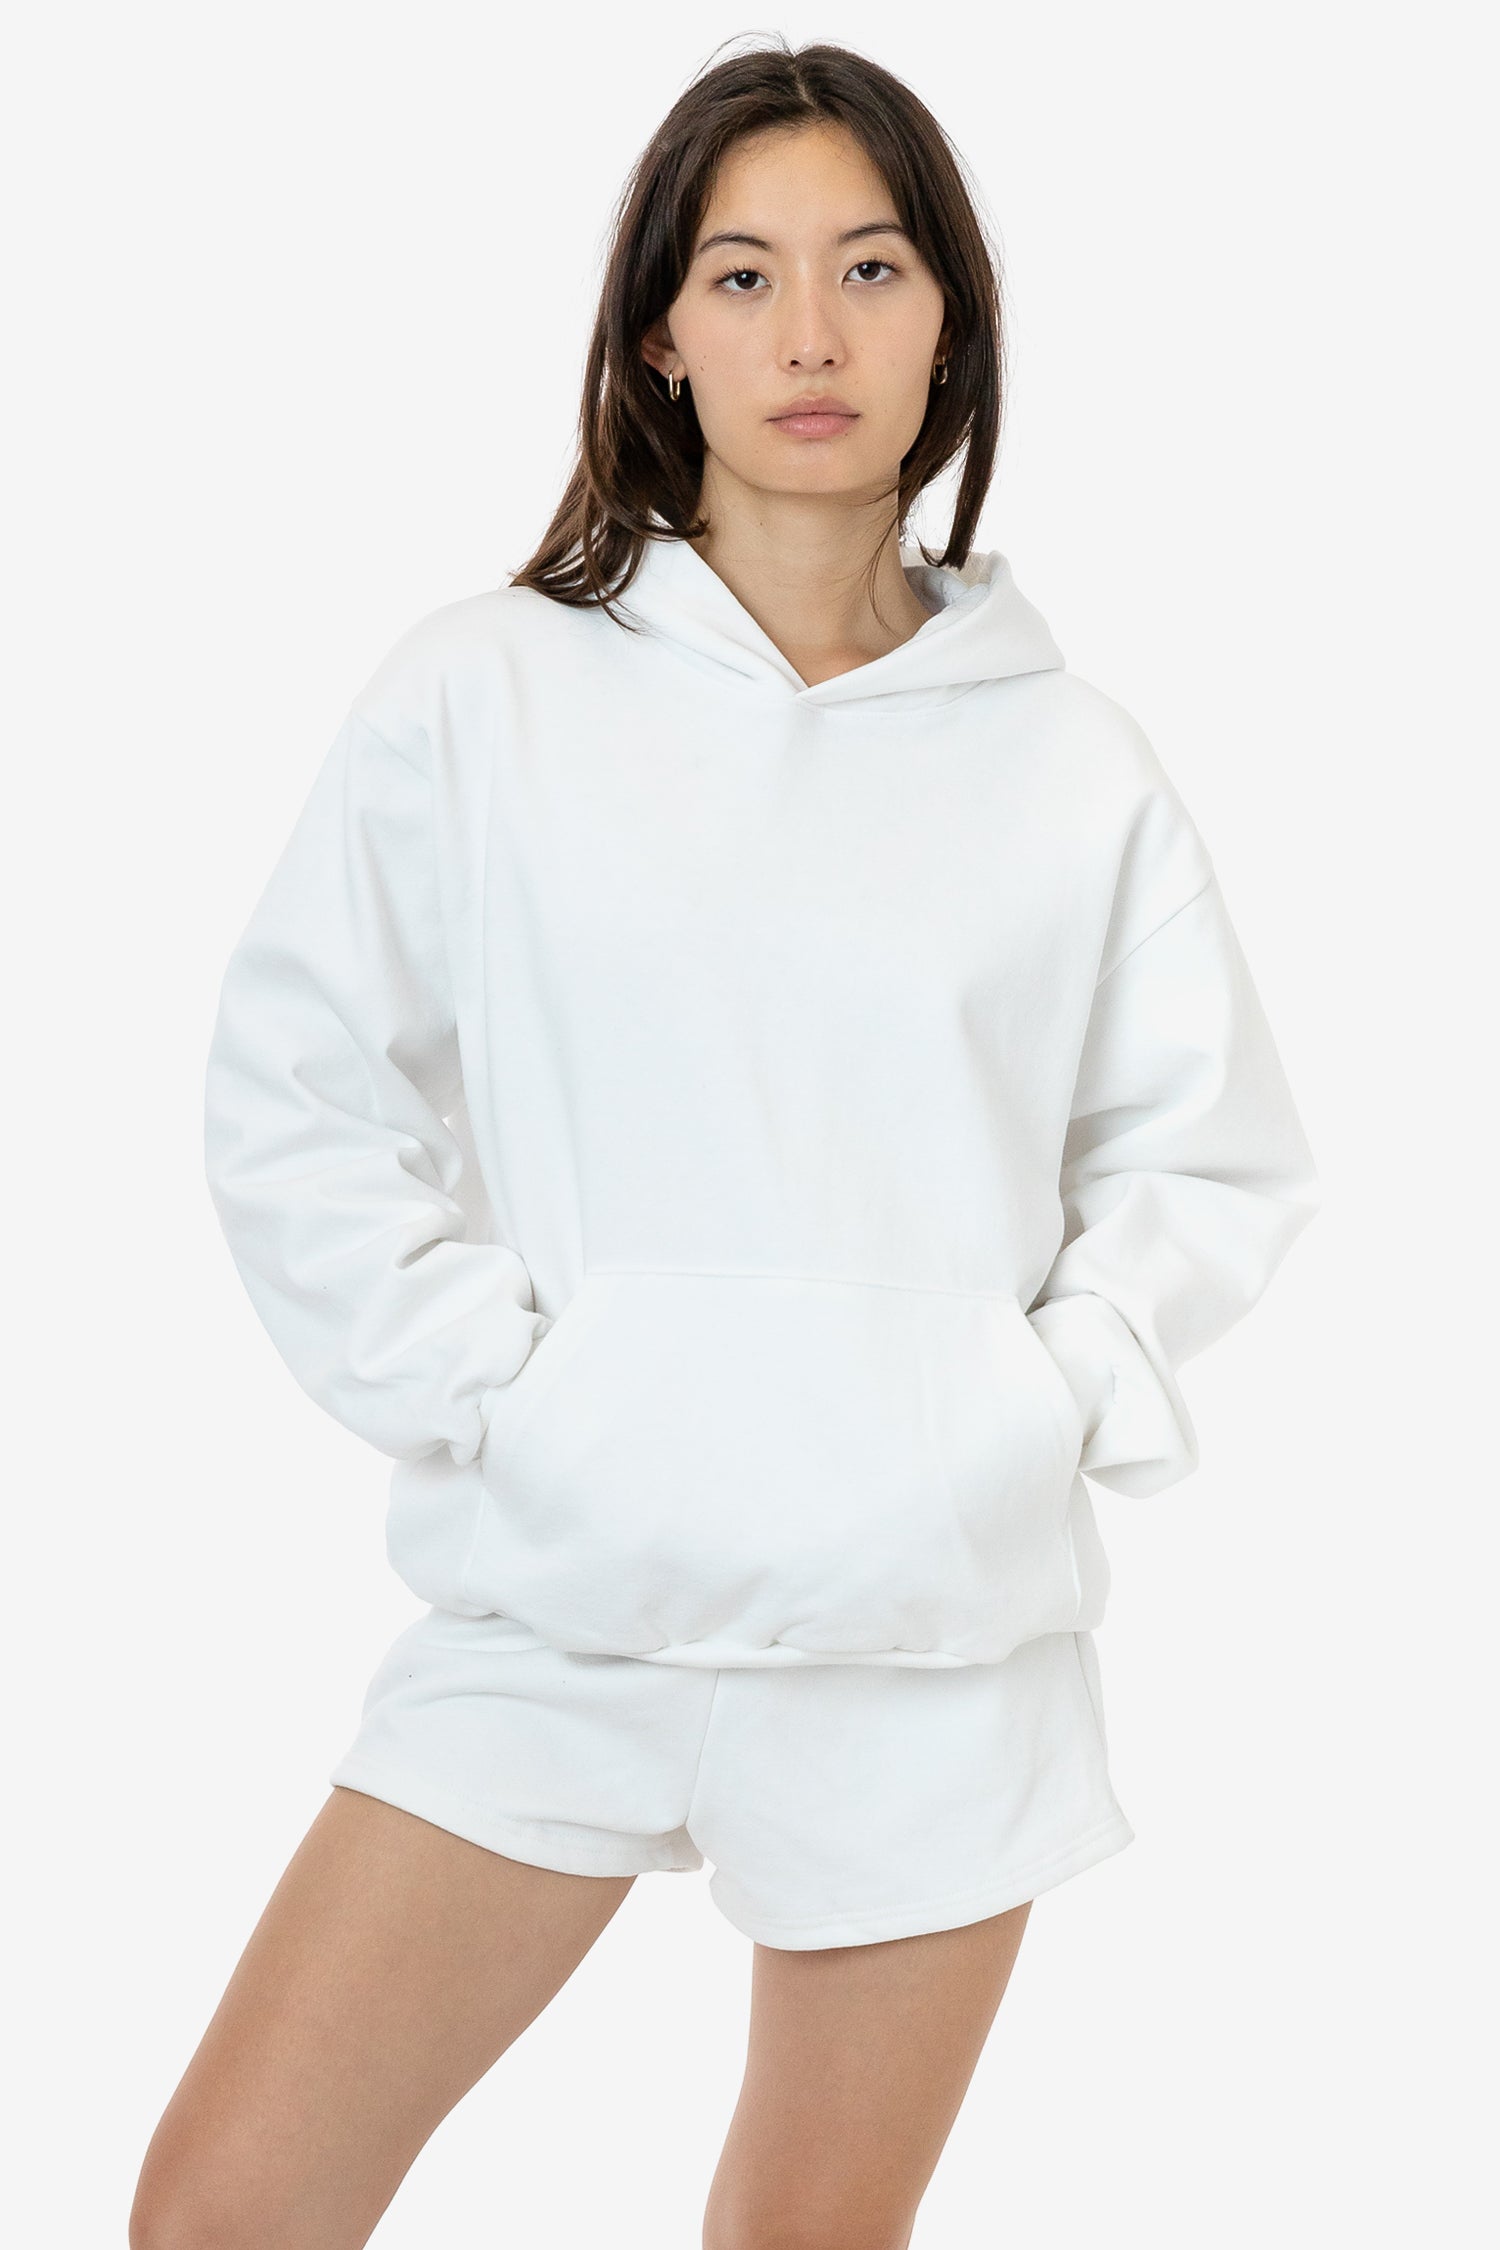 Los Angeles Apparel HF10 Zip Up Hooded Sweatshirt